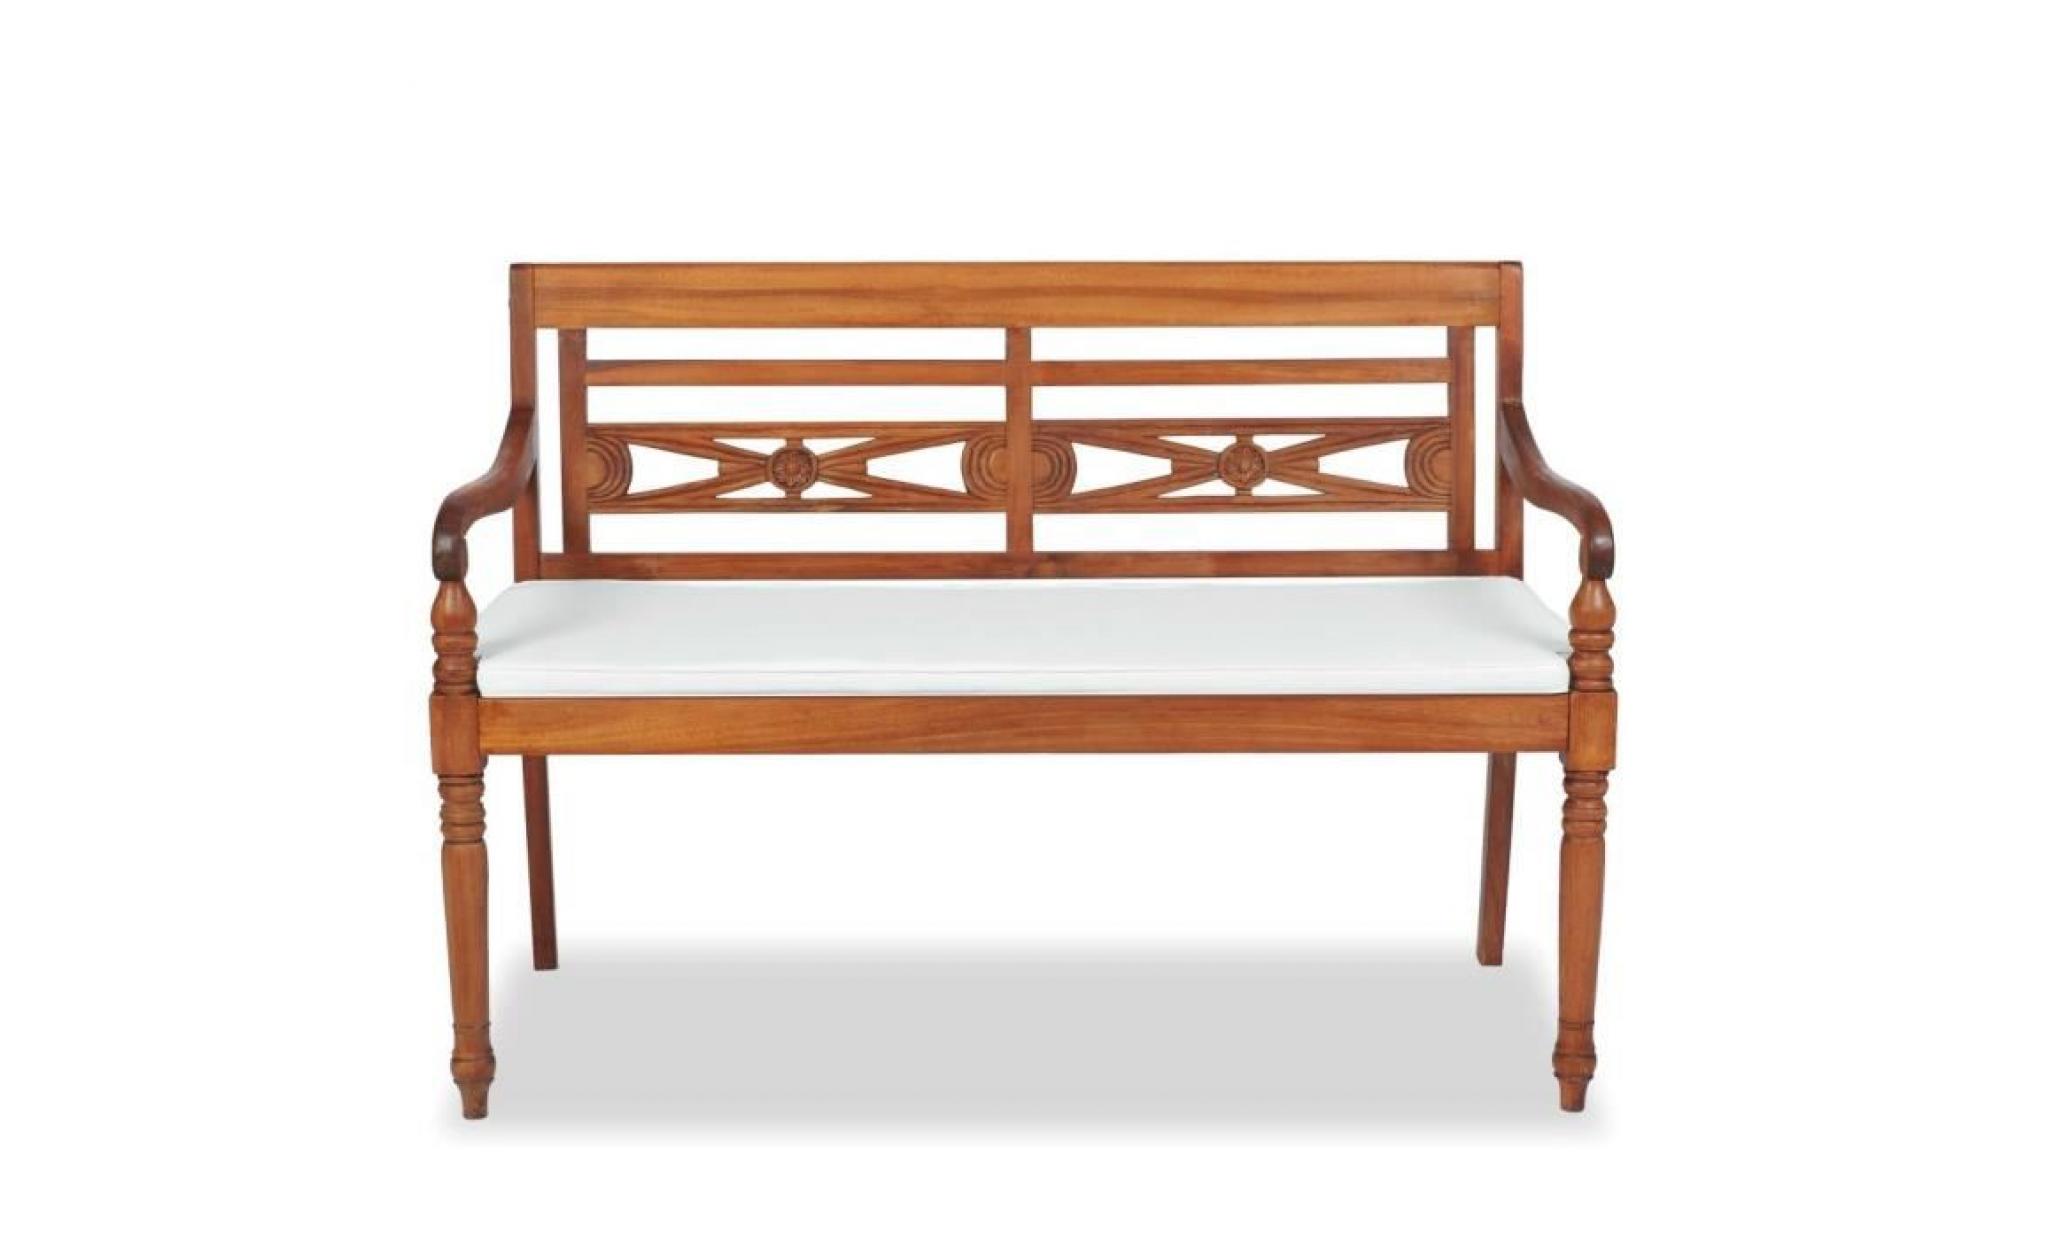 r156 ajoutez une touche d'elegance a votre espace de vie exterieur avec ce banc a 2 places en bois de teck massif ! il a